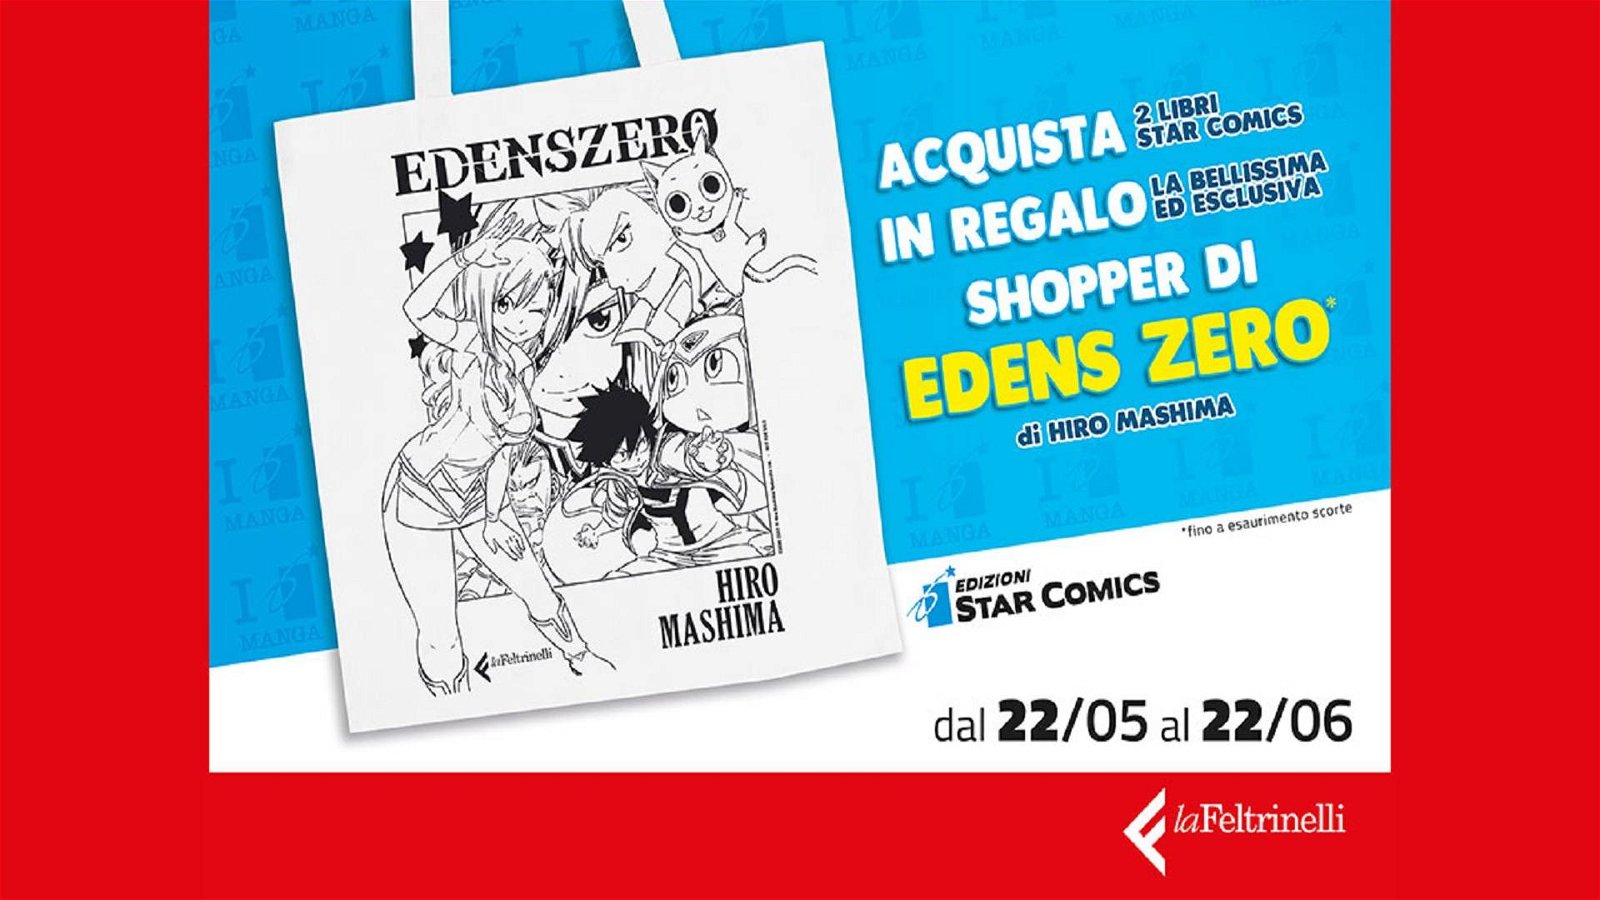 Immagine di Edizioni Star Comics e Feltrinelli regalano una shopper Edens Zero